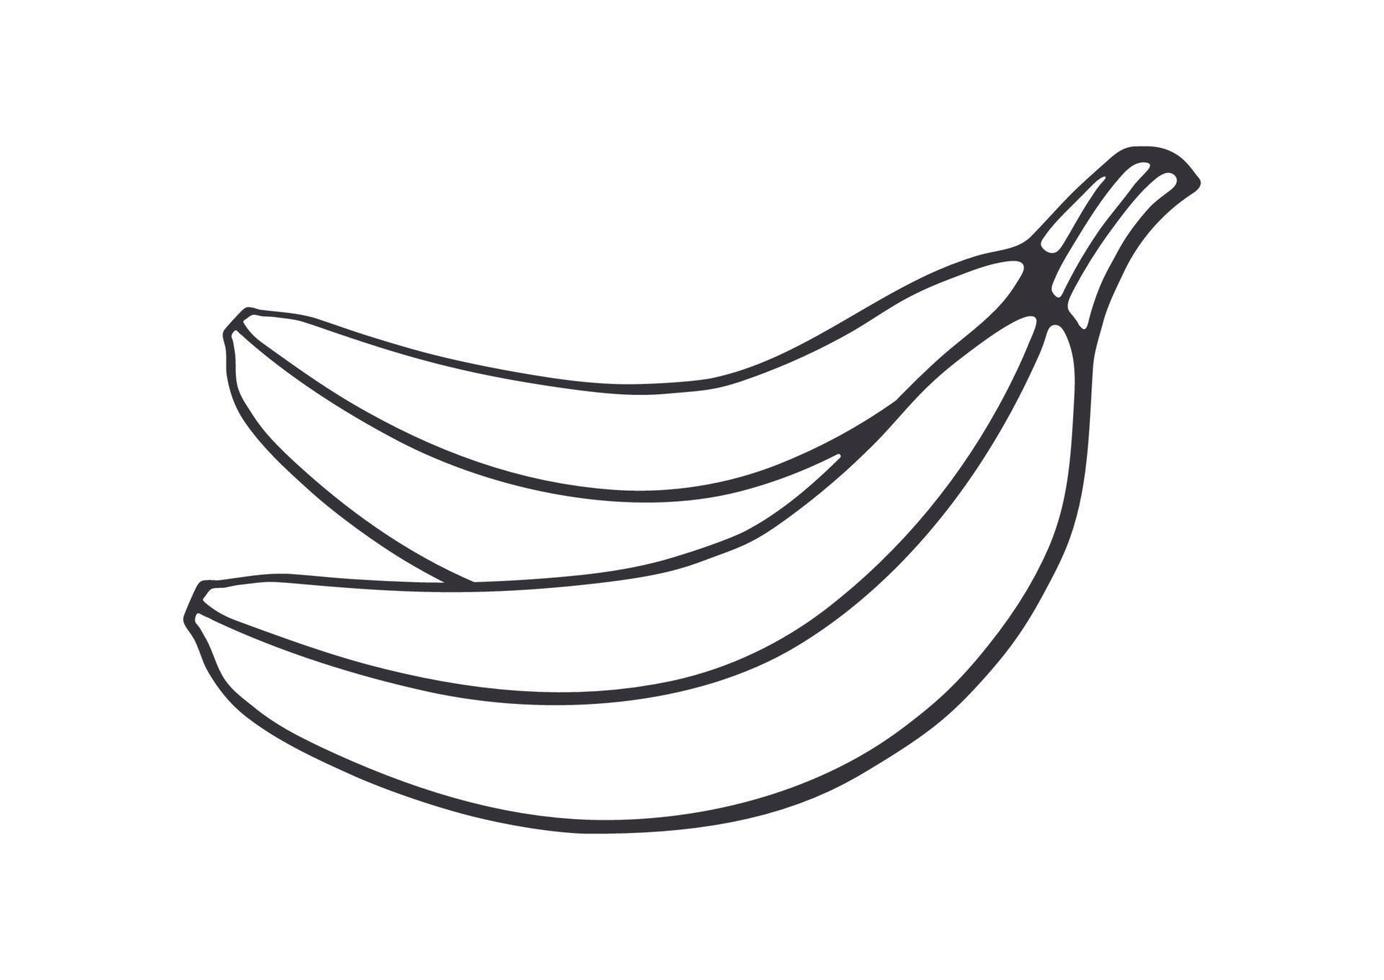 Gliederung Gekritzel von zwei Bananen vektor